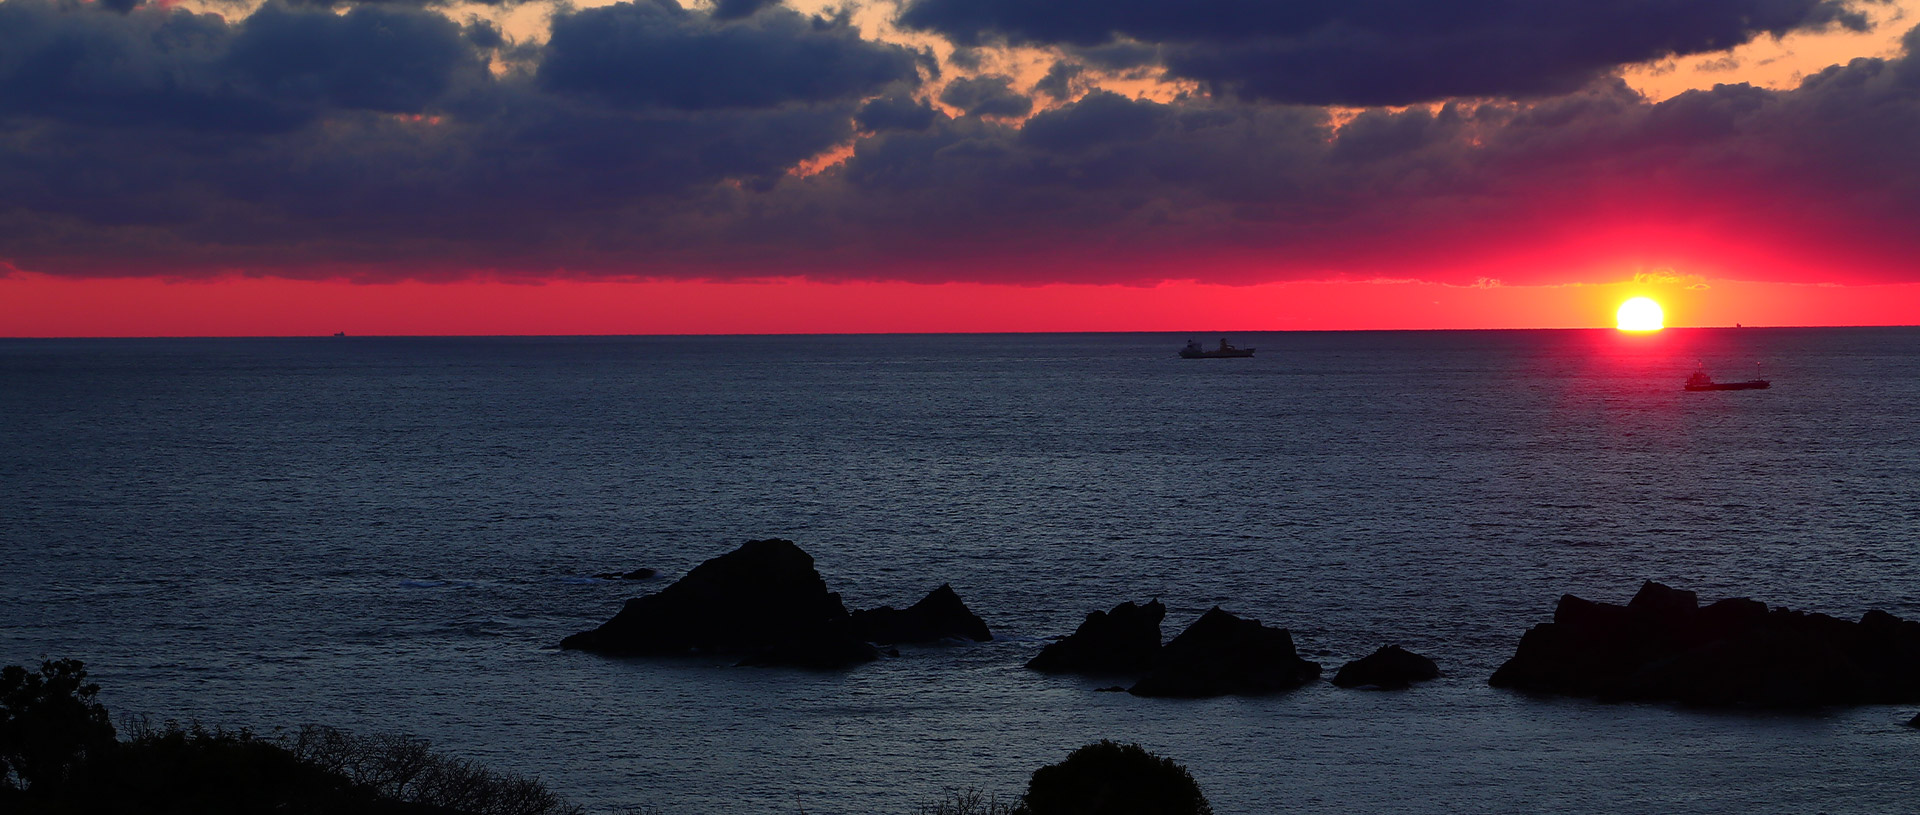 『太平洋×朝陽・夕陽・星空』の絶景パノラマ